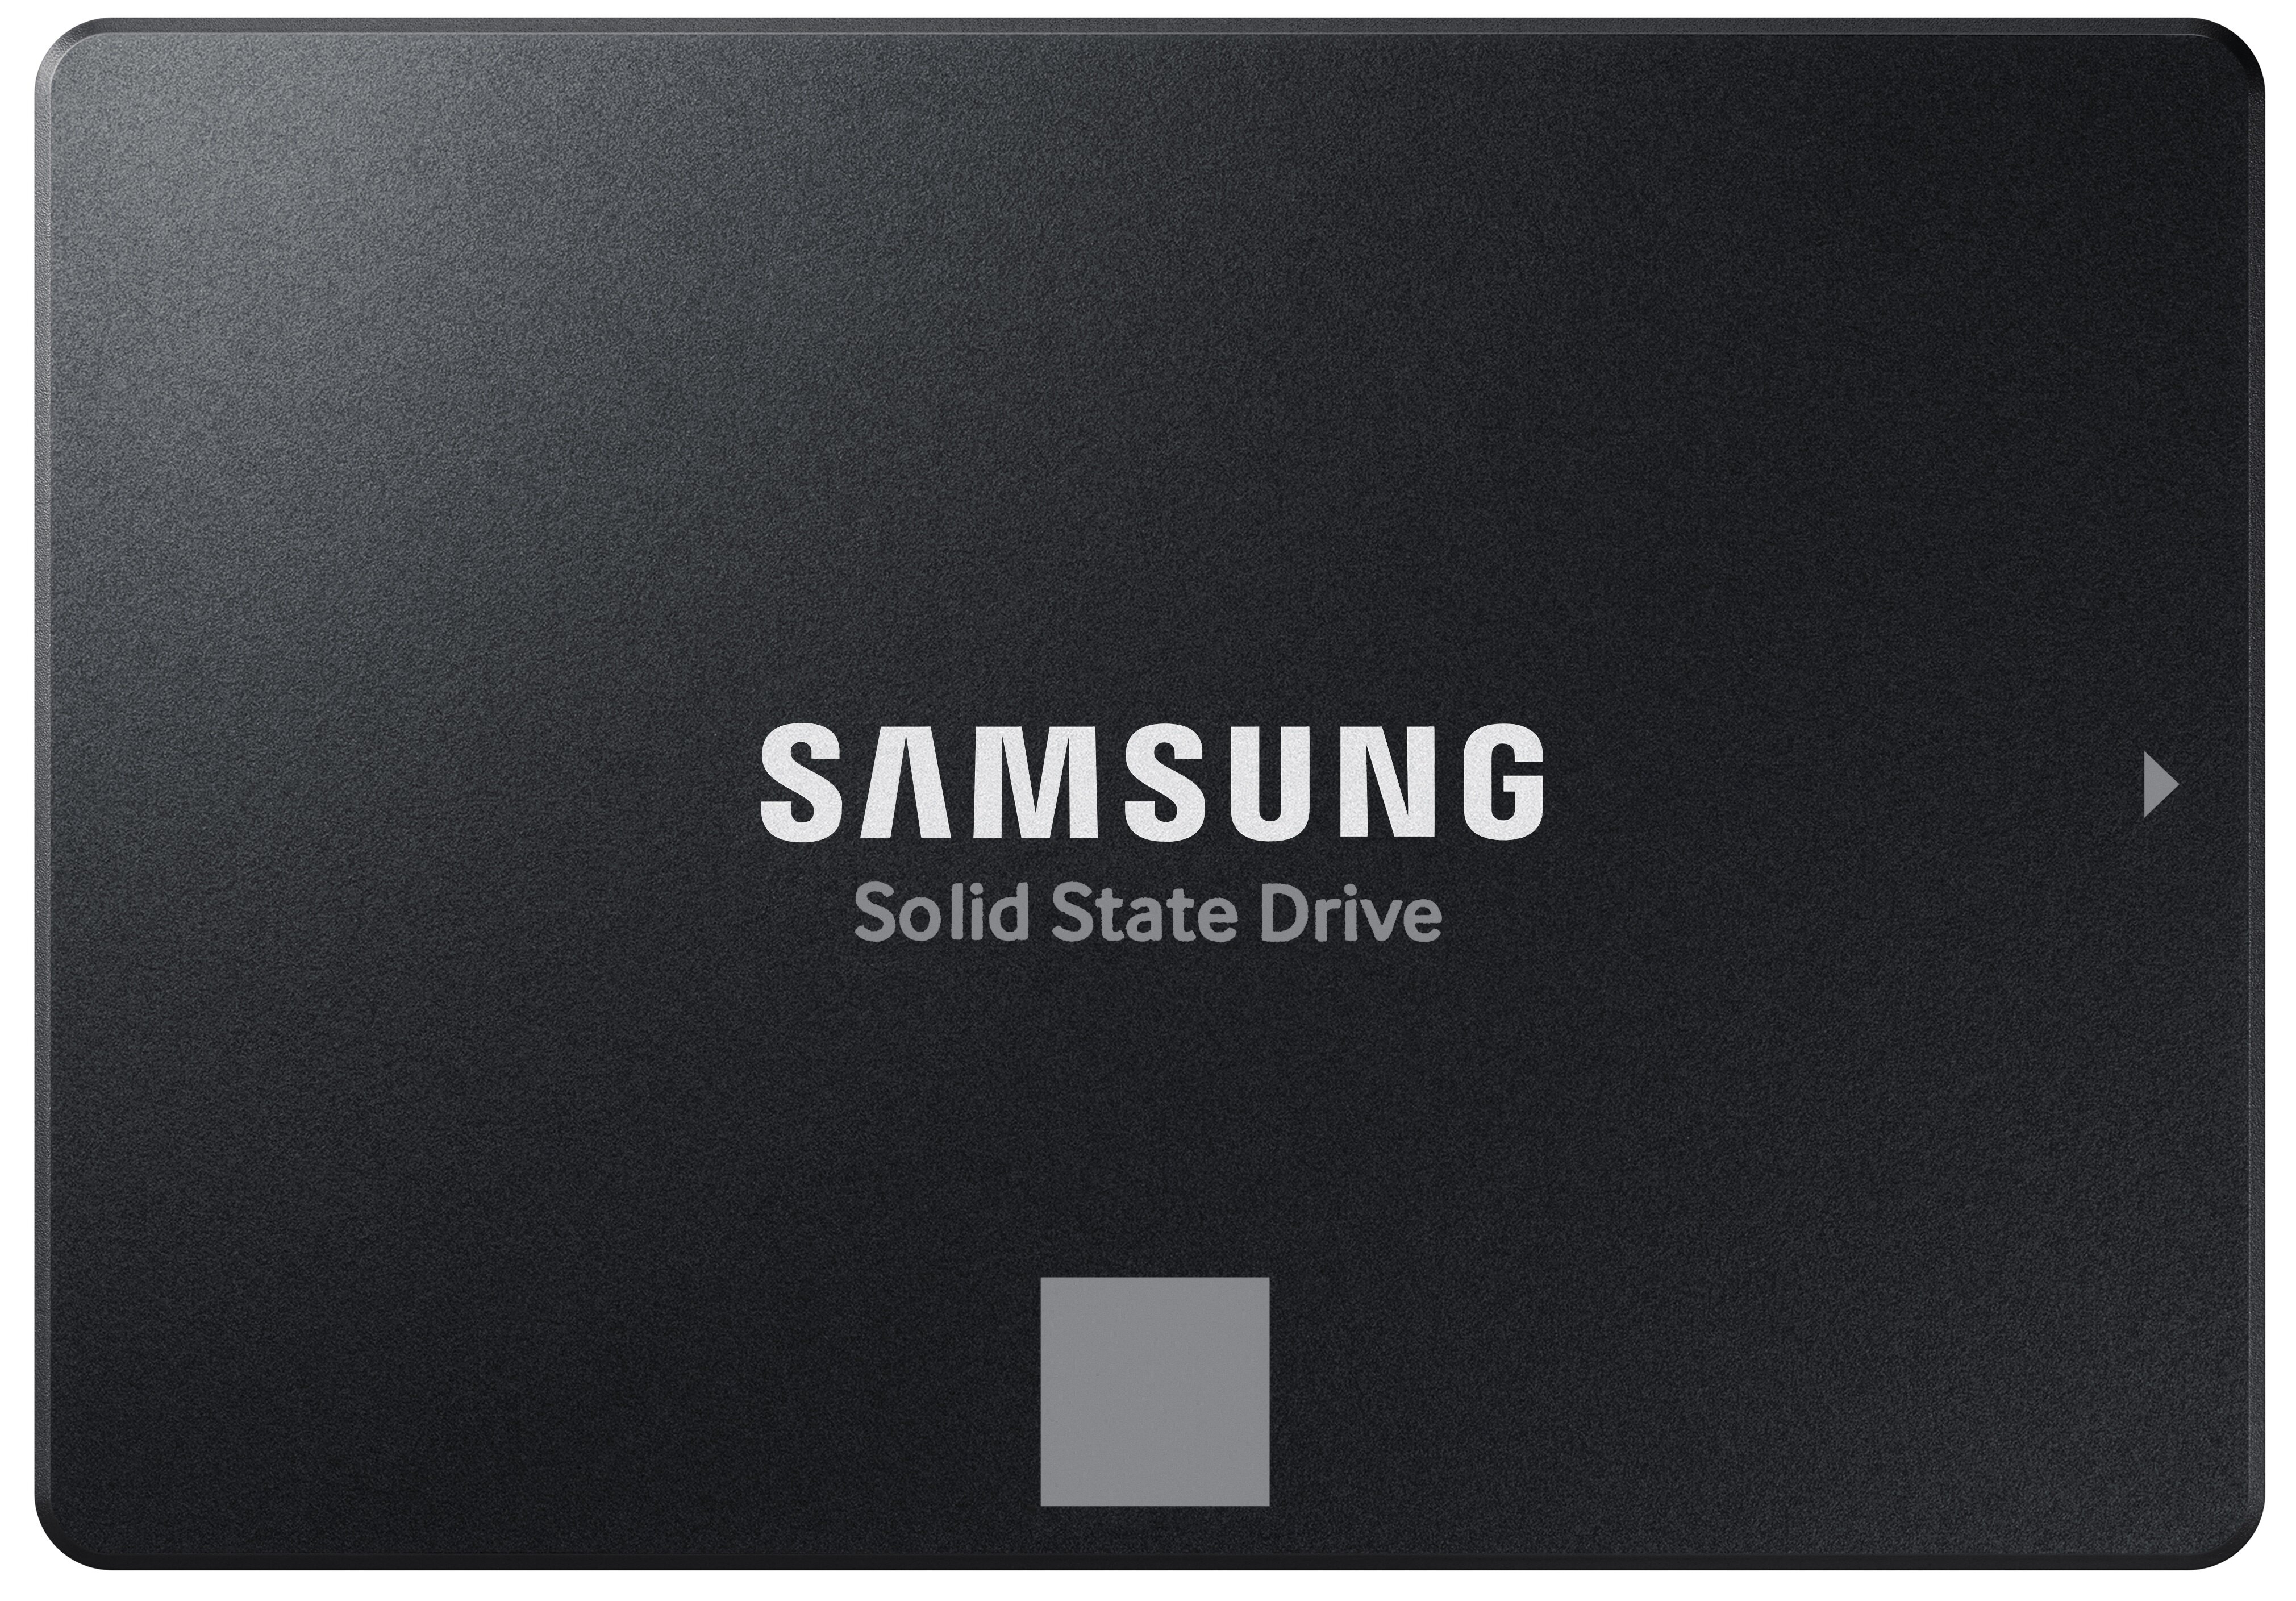 SAMSUNG 870 Evo 500GB SSD Dysk - ceny i opinie w Media Expert